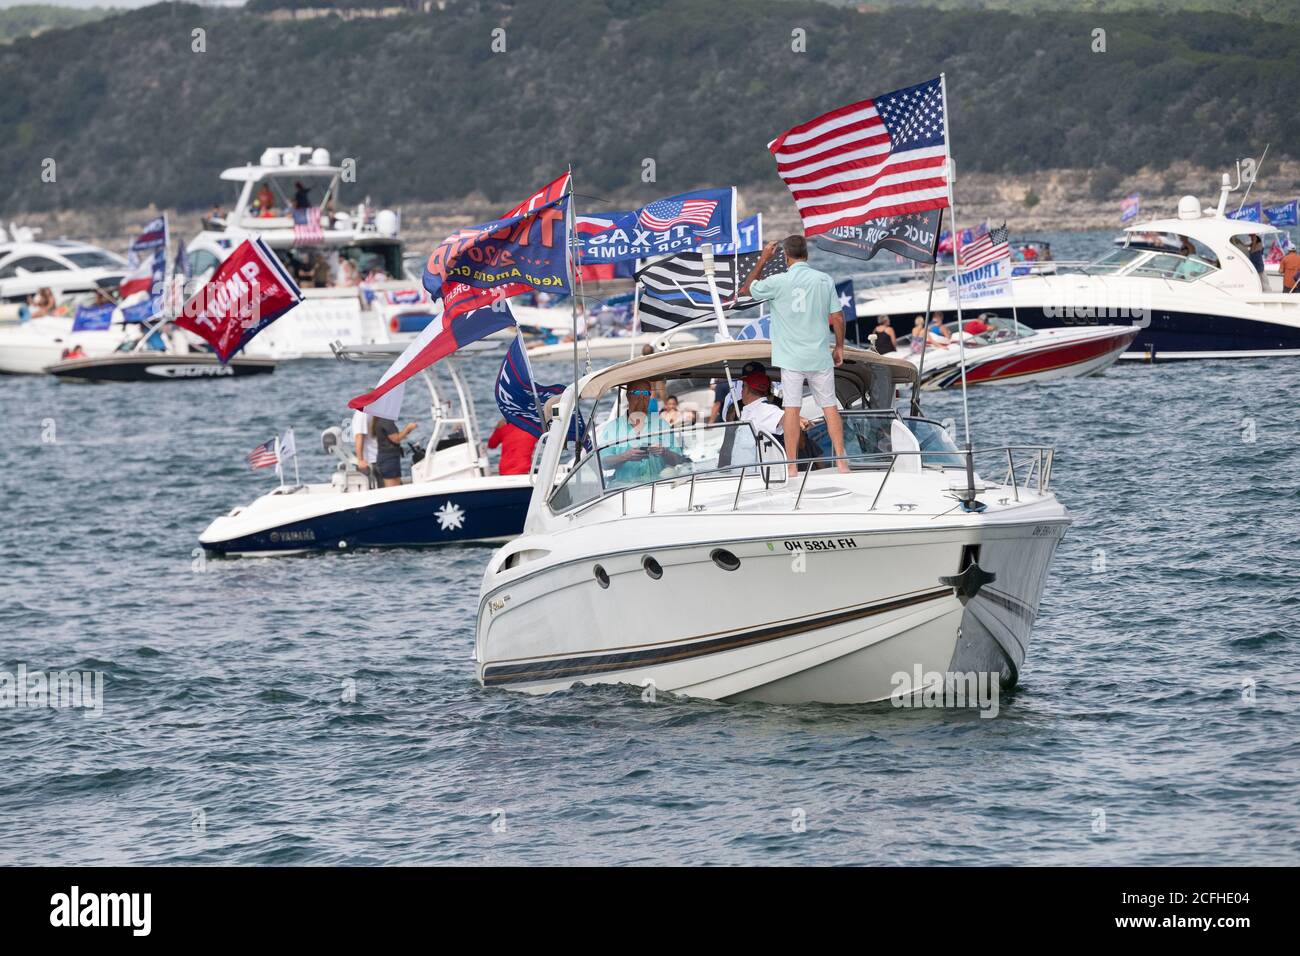 Lakeway, Texas USA 5 septembre 2020 : un défilé de bateaux pour montrer son soutien à la presse américaine Donald Trump a attiré des centaines de motomarines de toutes tailles, la plupart volant de plusieurs drapeaux de Trump. Plusieurs bateaux ont été submergés dans les énormes ébarges qui ont été piétinés par la flottille, mais aucune blessure n'a été signalée. Crédit : ©Bob Daemmrich/Alamy Live News Banque D'Images